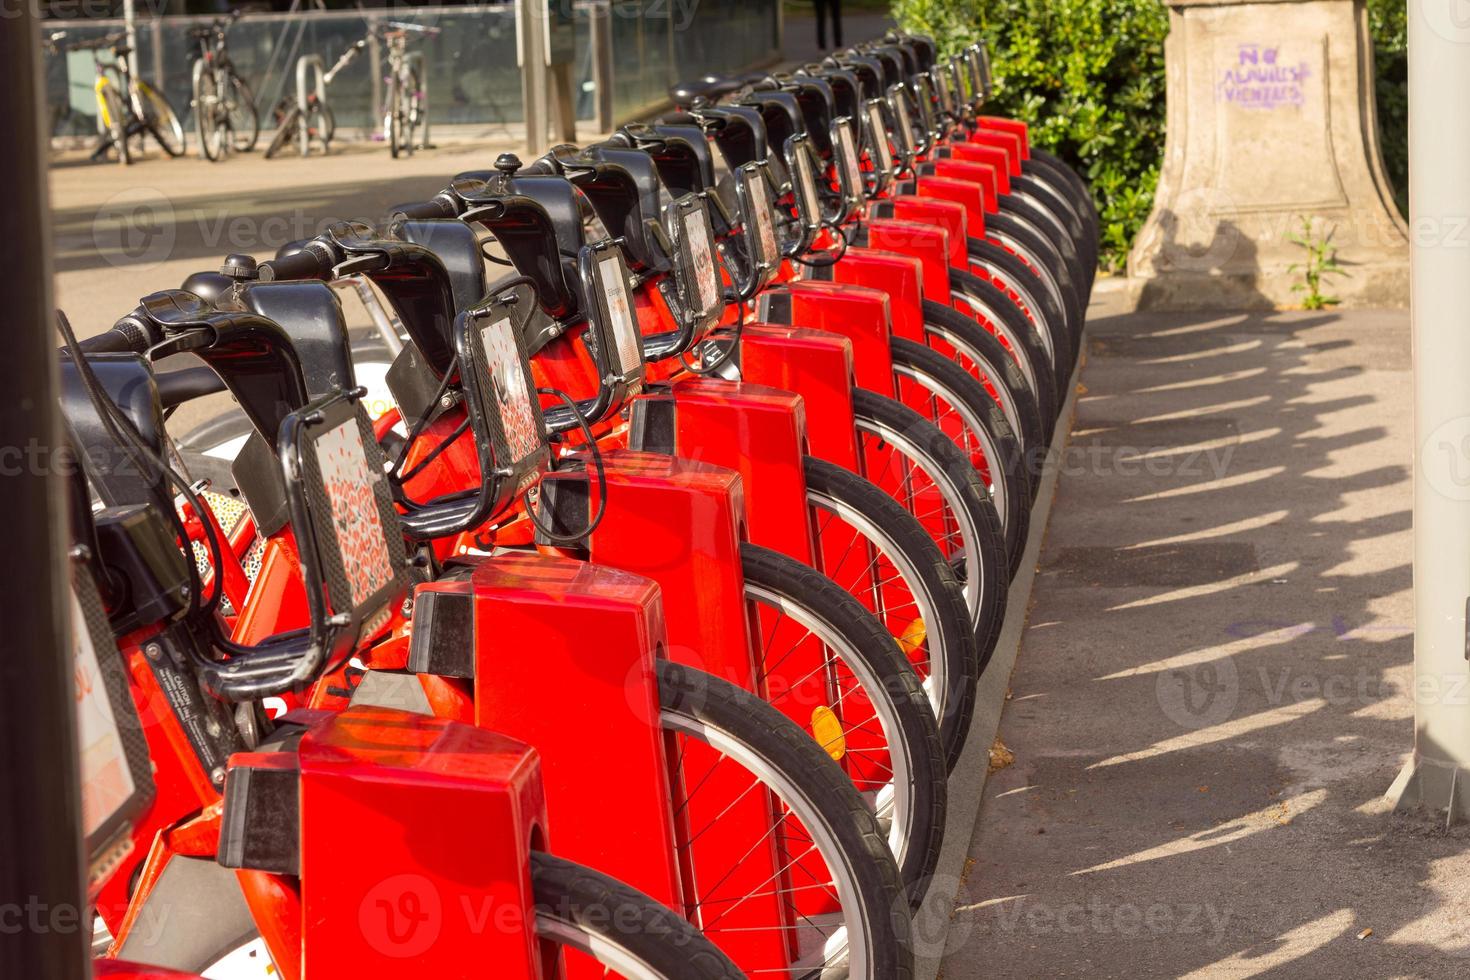 fietsverhuur op stadswegparkeren met zonlicht, openbaar vervoerconcept. foto